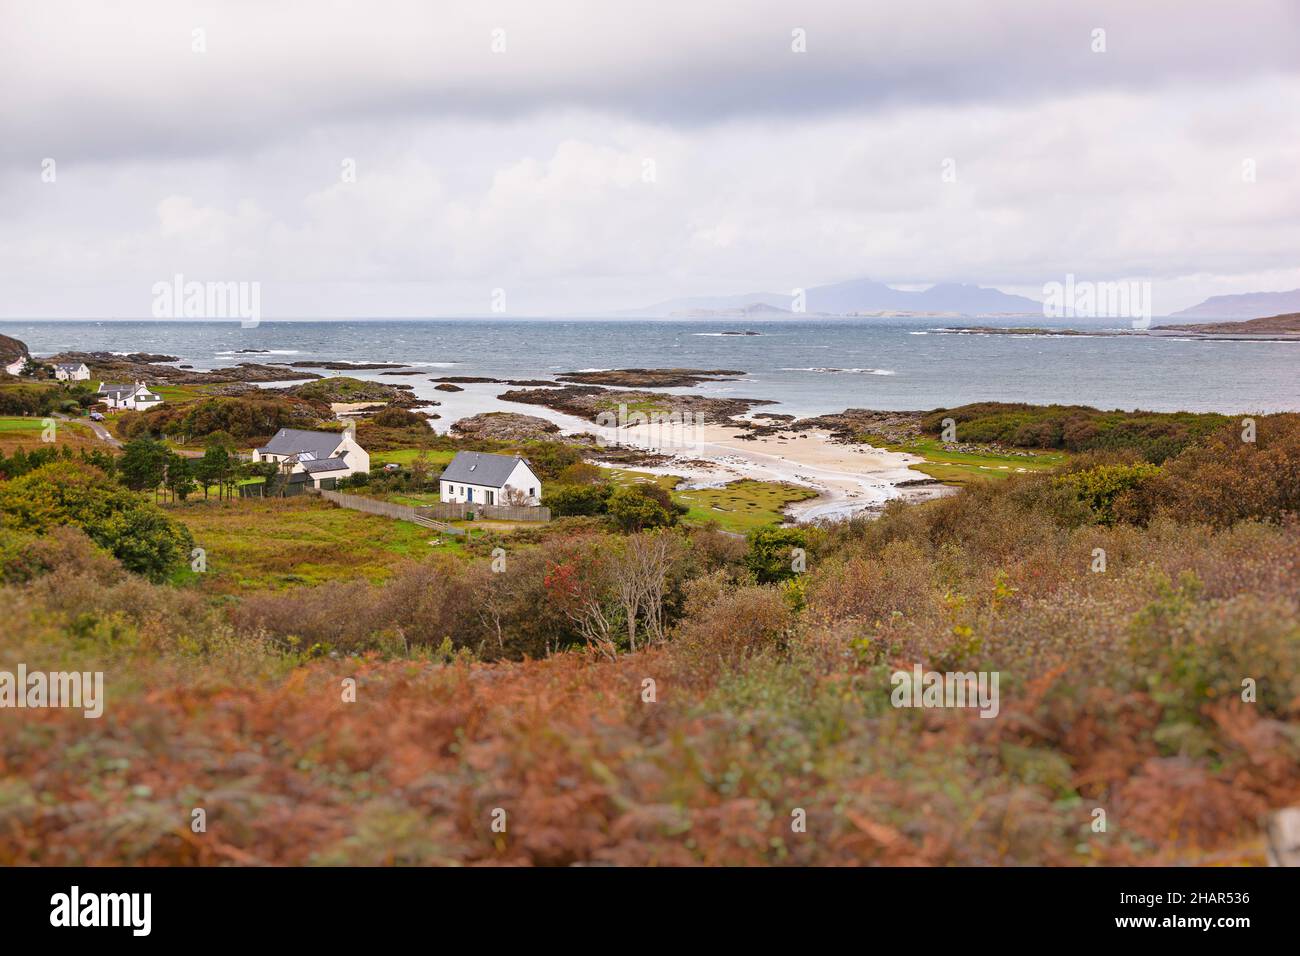 La piccola cittadina di Portuairk, l'insediamento più occidentale della terraferma britannica nella Scozia occidentale, offre viste sulle piccole isole Foto Stock